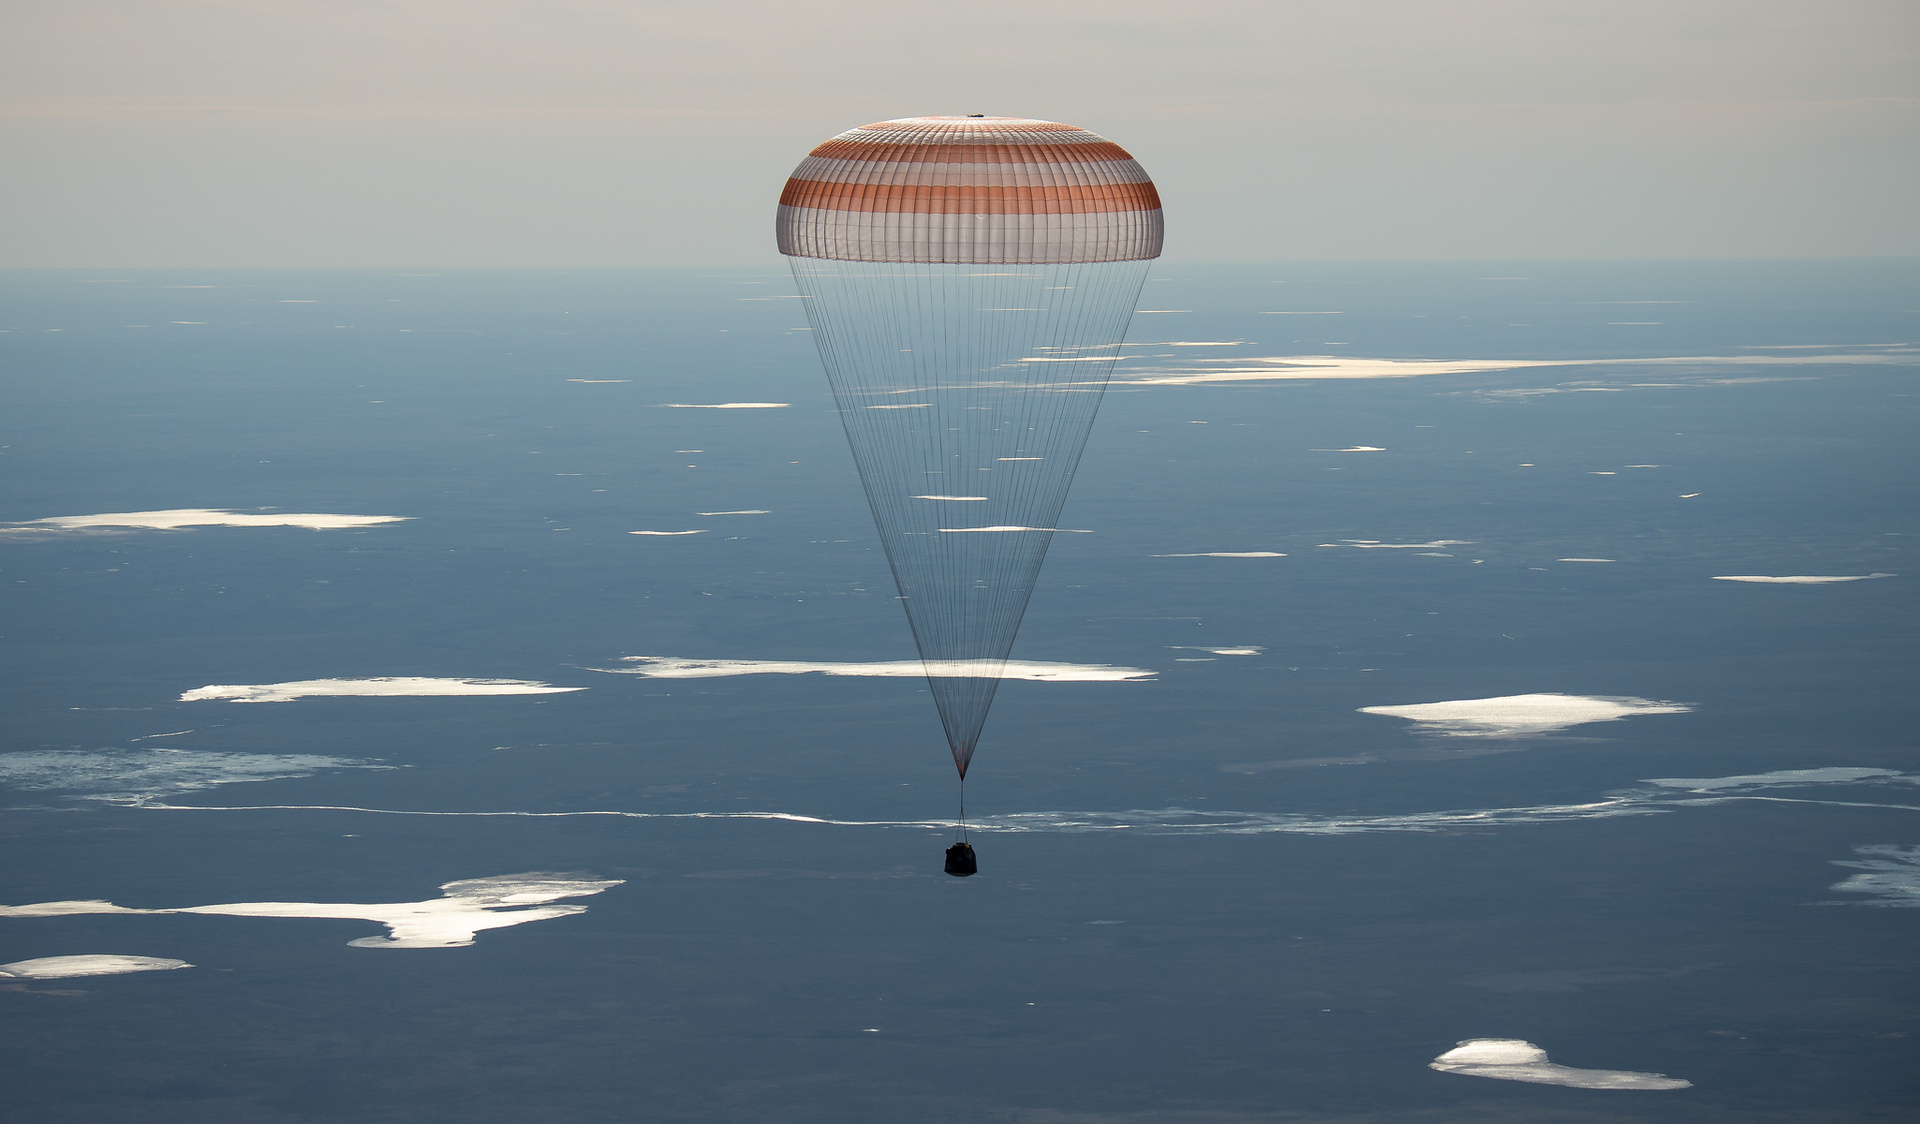 Roskosmos: Αποσυμπίεση για το Soyuz MS-02 κατά την προσγείωση